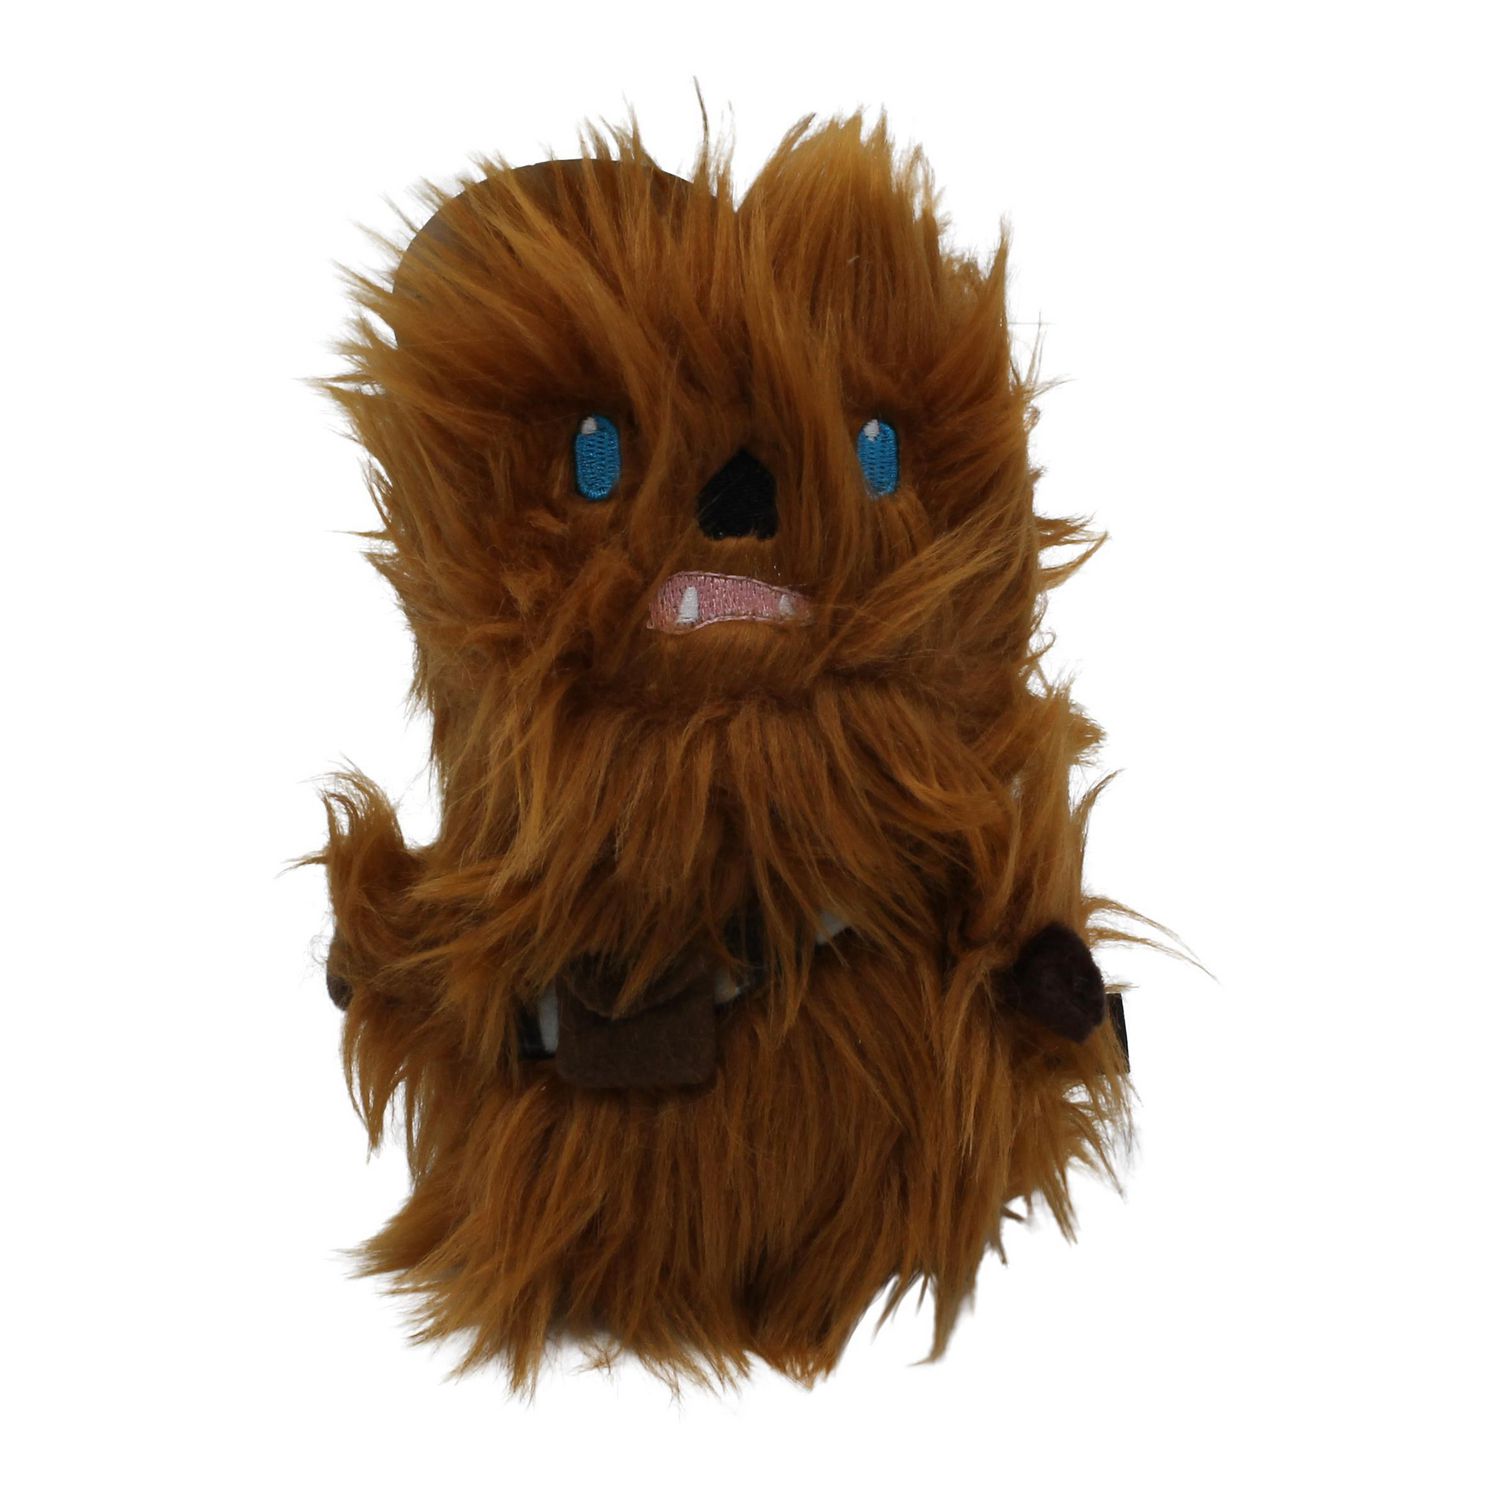 star wars chewbacca toy